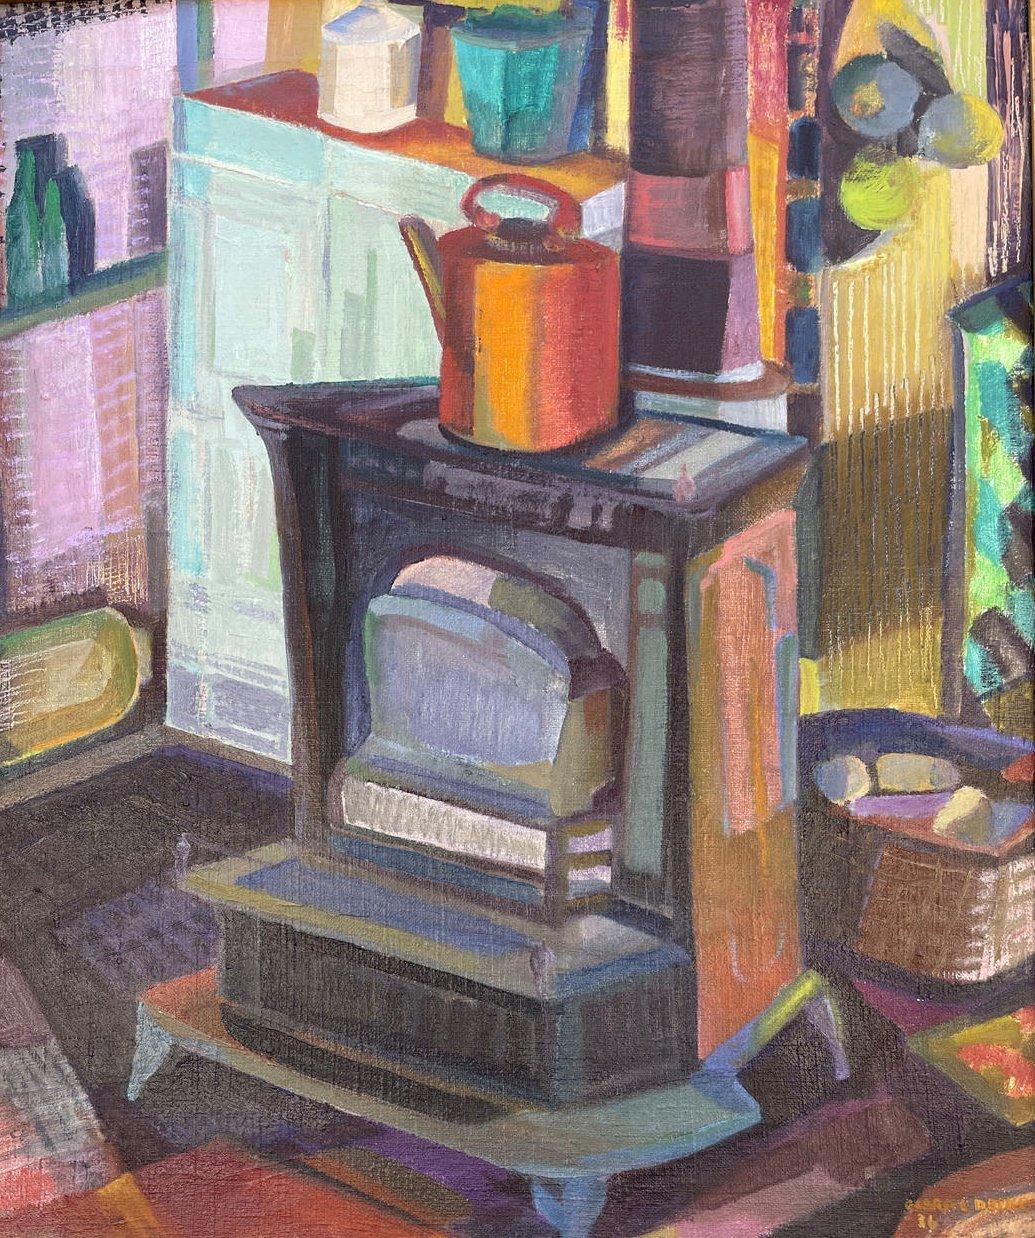 Studio Stove, Buntes kubistisches Ölgemälde, Künstlerin aus der Cleveland School – Painting von Clara Deike